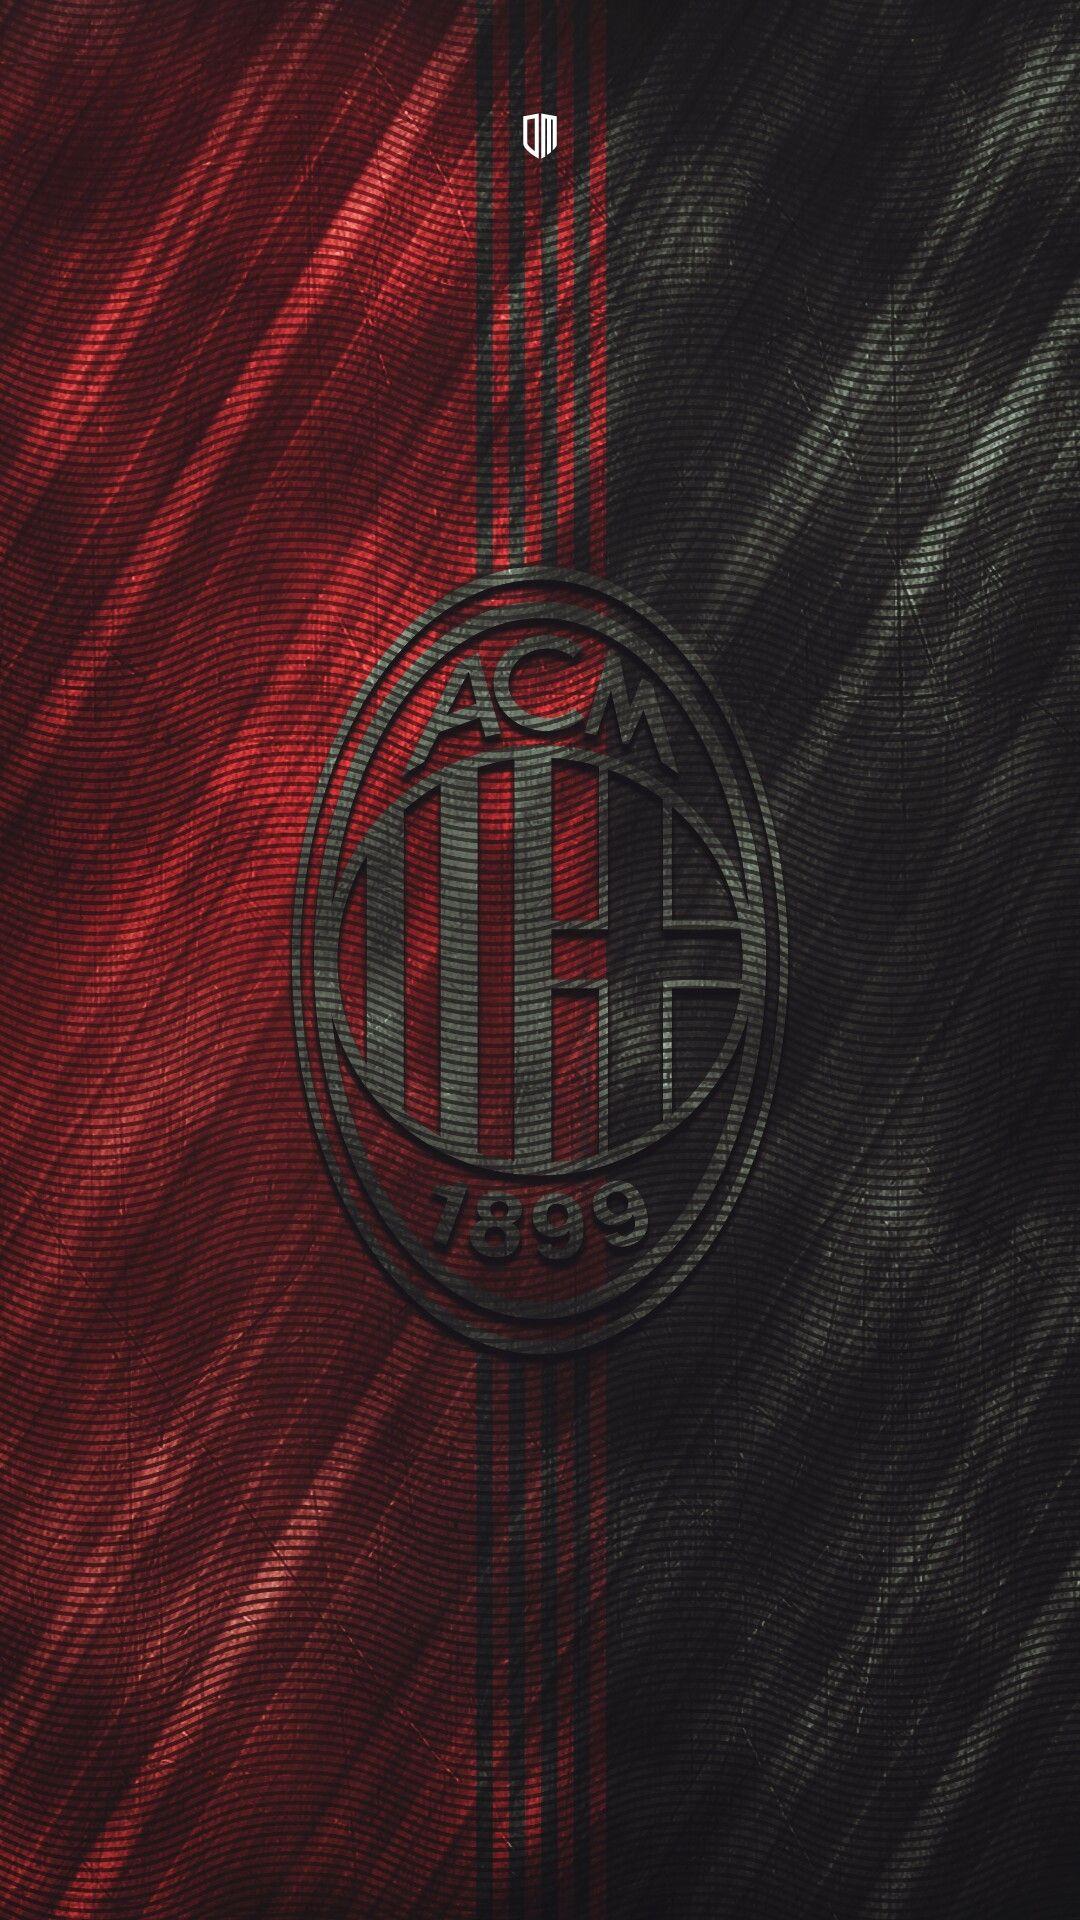 Best AC Milan image. ac milan, milan, milan wallpaper